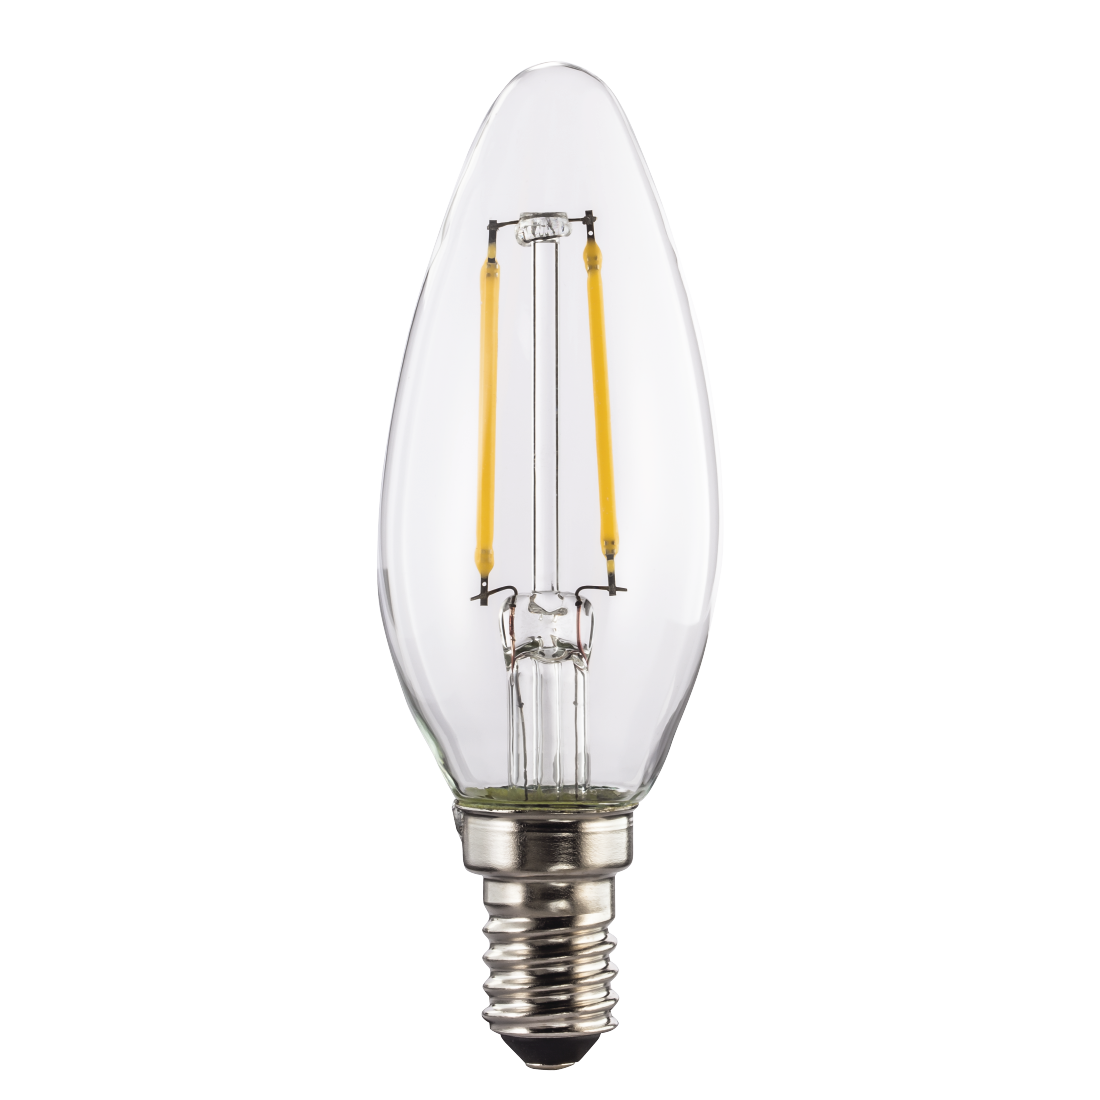 abx High-Res Image - Xavax, Ampoule filament LED, E14, 806lm rempl. ampoule bougie 60W, blc chaud